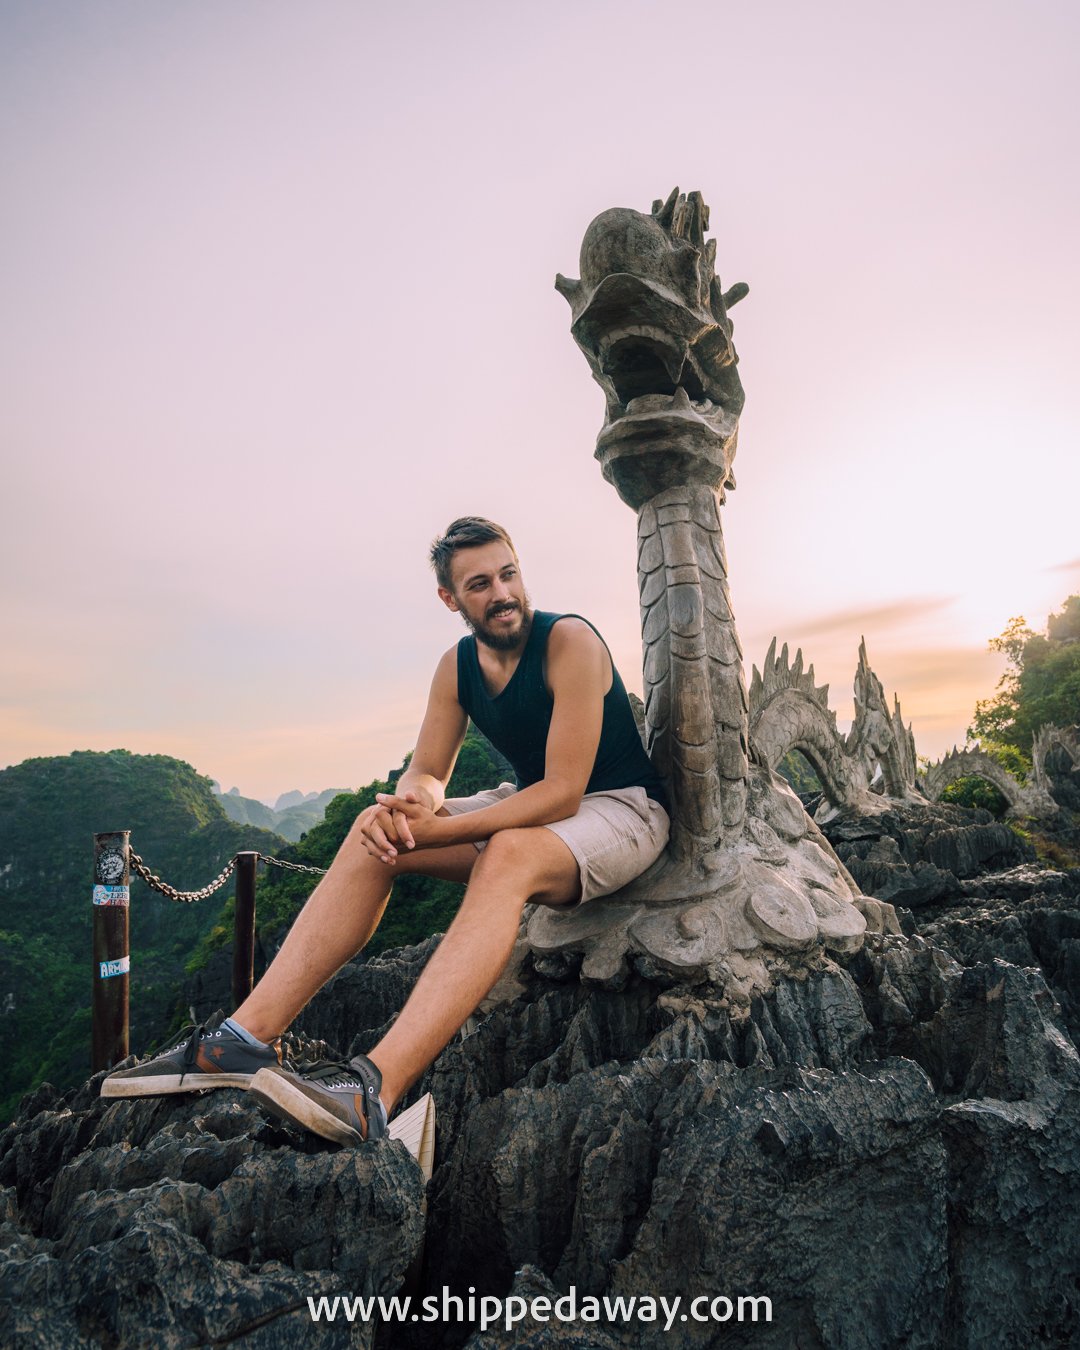 Matej Špan at the dragon of Hang Mua Caves Viewpoint, Ninh Binh